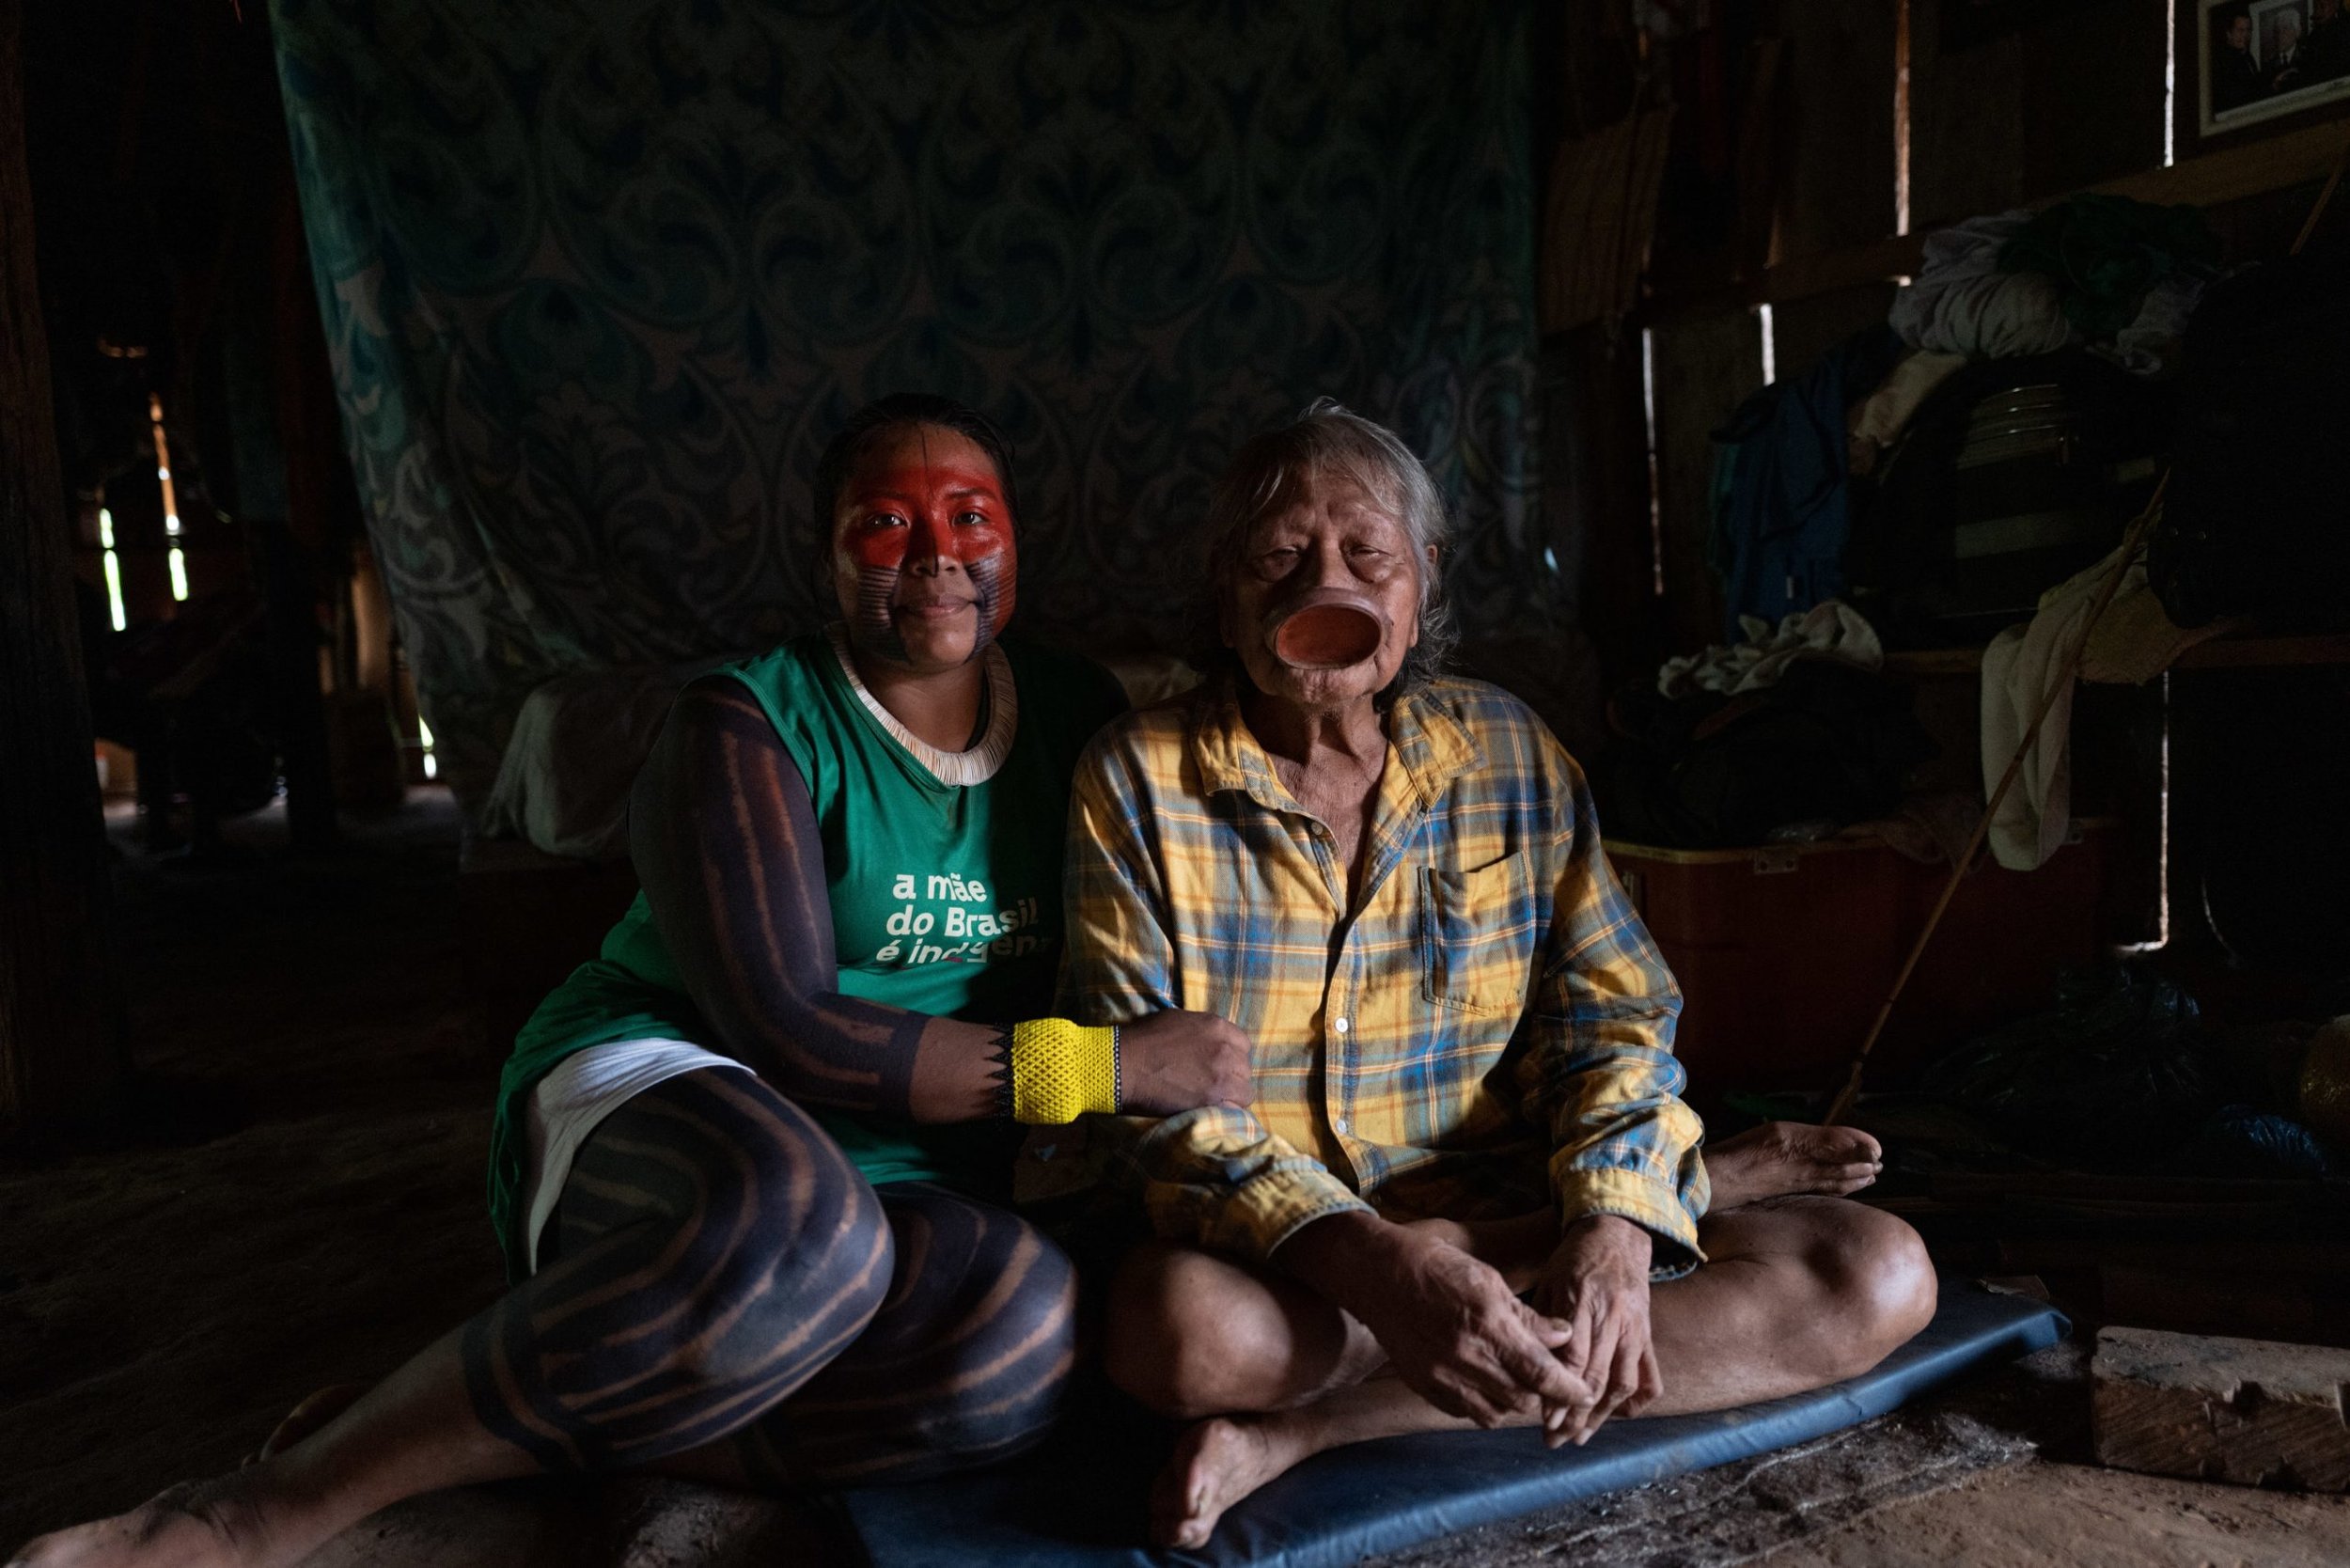  Mayalú med sin farfar/morfar Cacique Raoni, en historisk ledare för Kayapó Mebengokrefolket i Xinguområdet. Foto: Alice Aedy.    